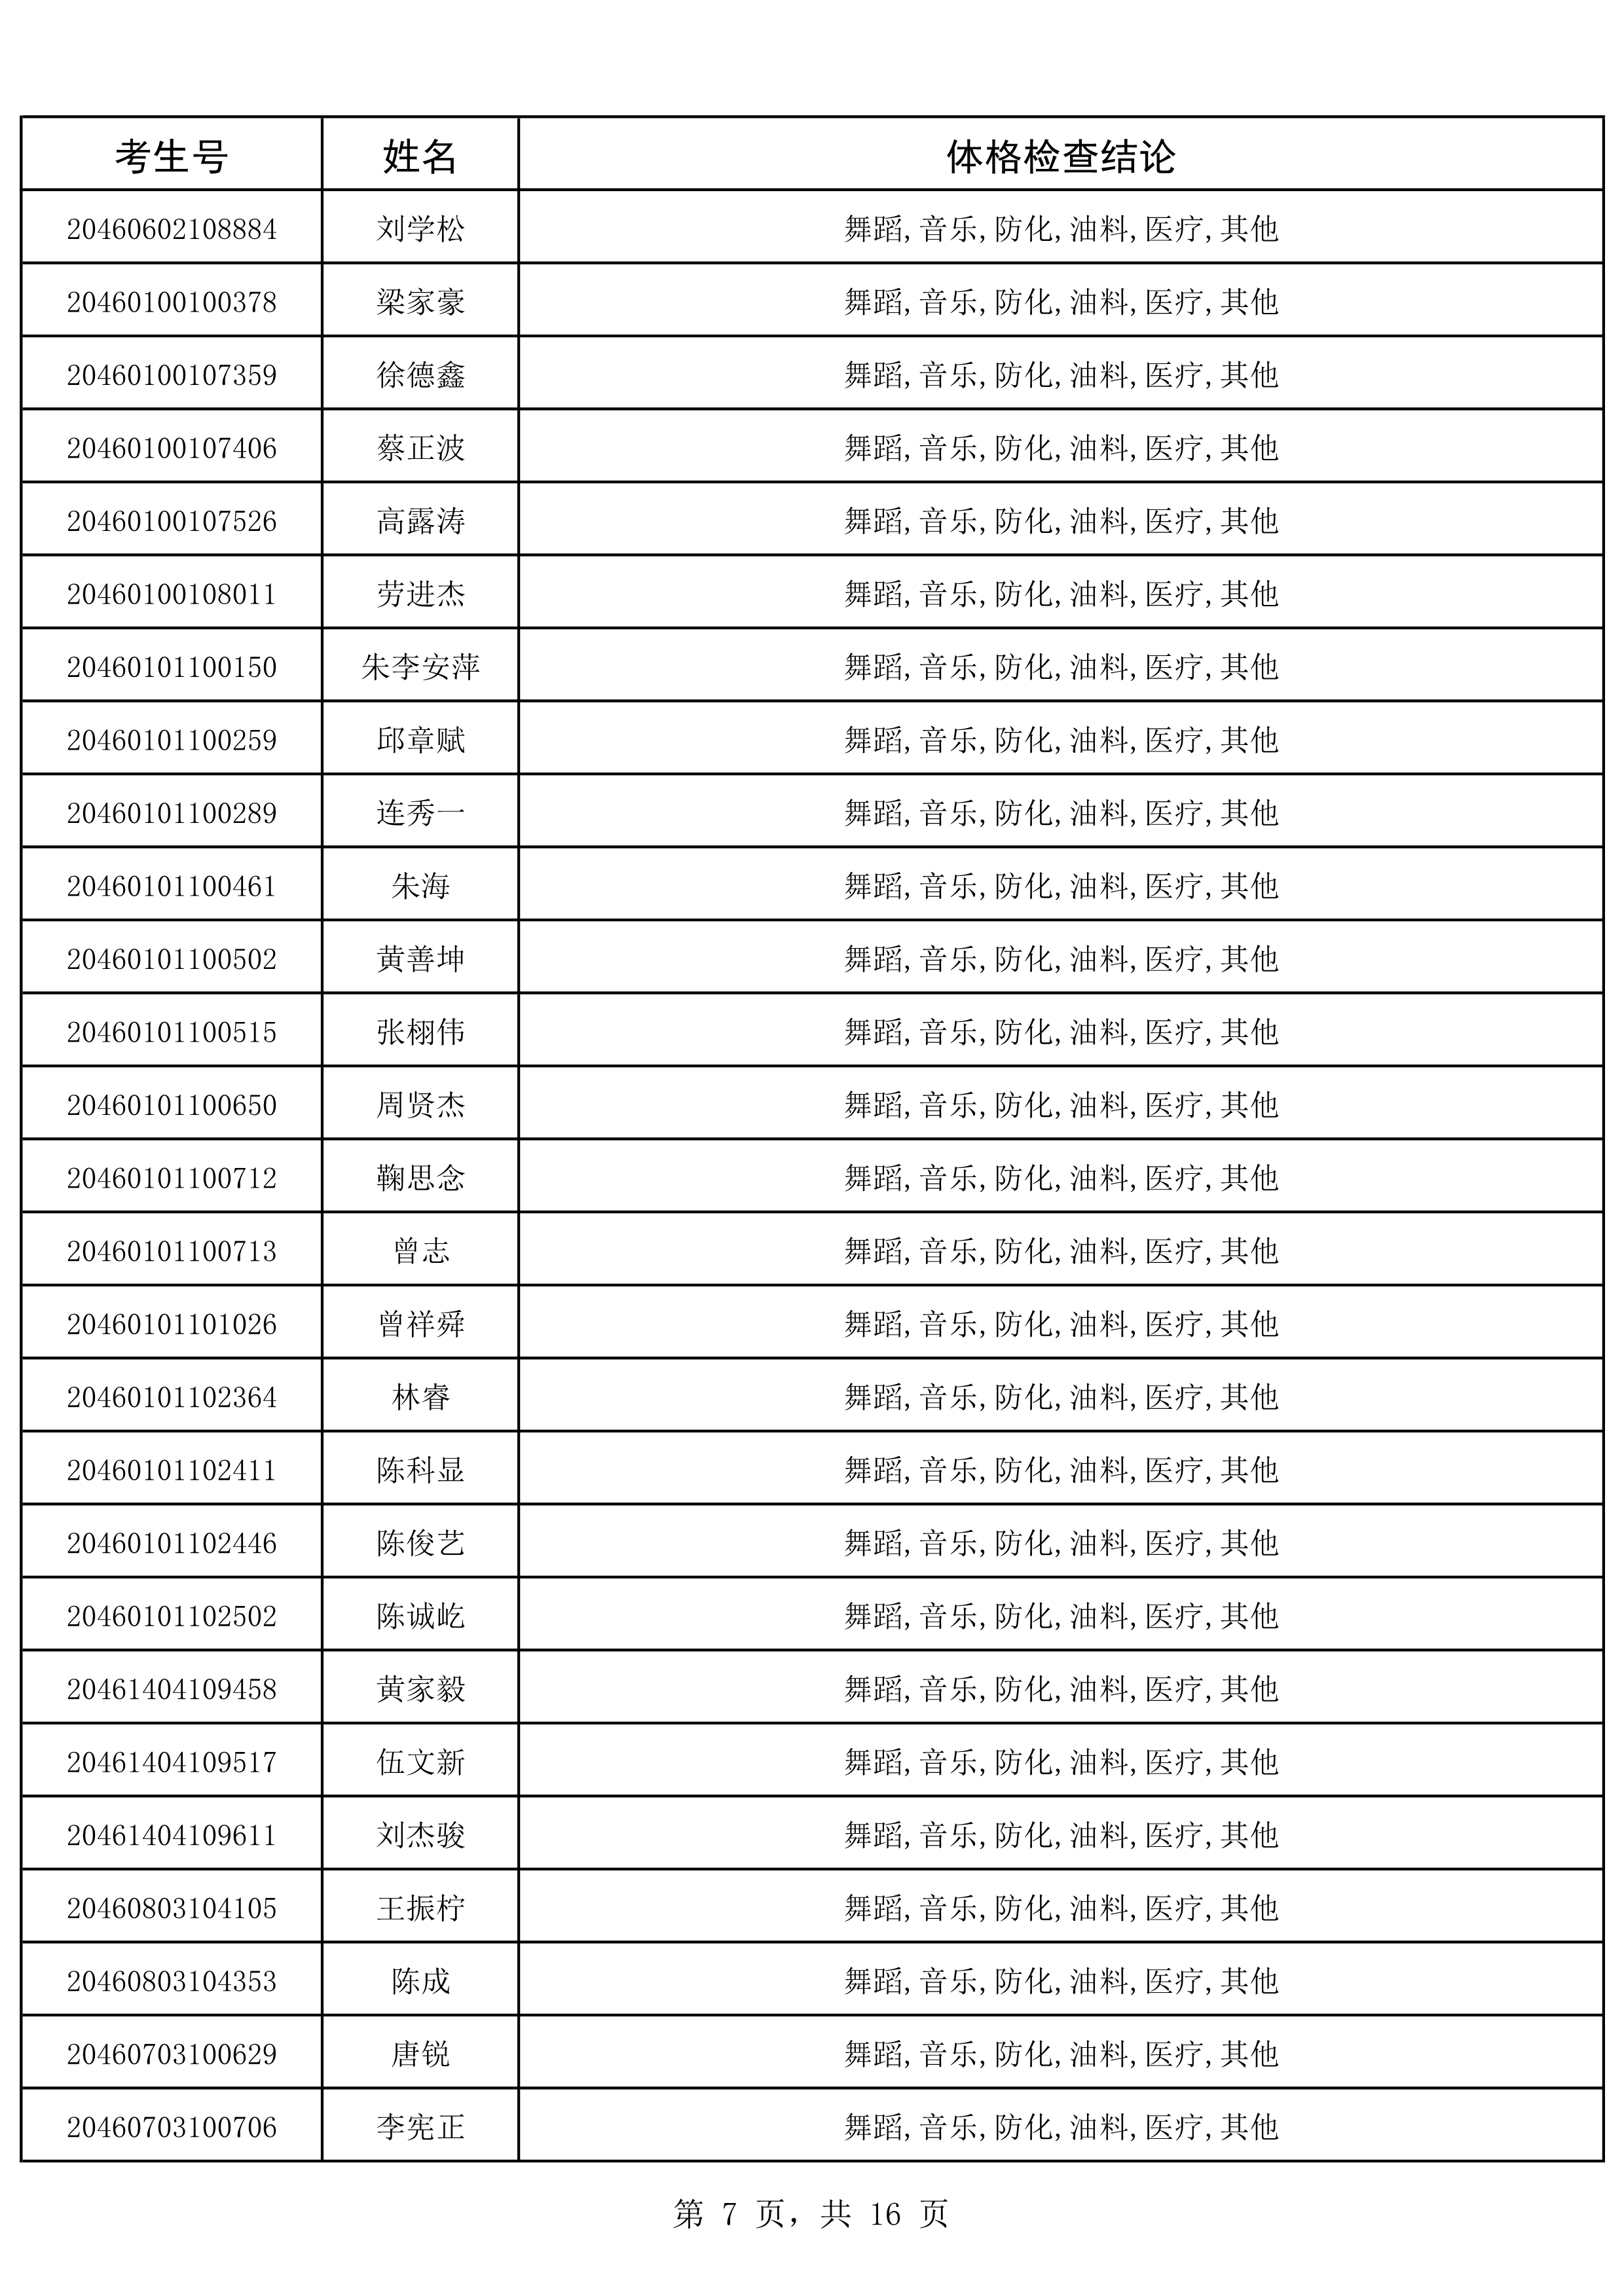 2020年海南省军队院校招生政治考核、军检合格考生名单_7.png